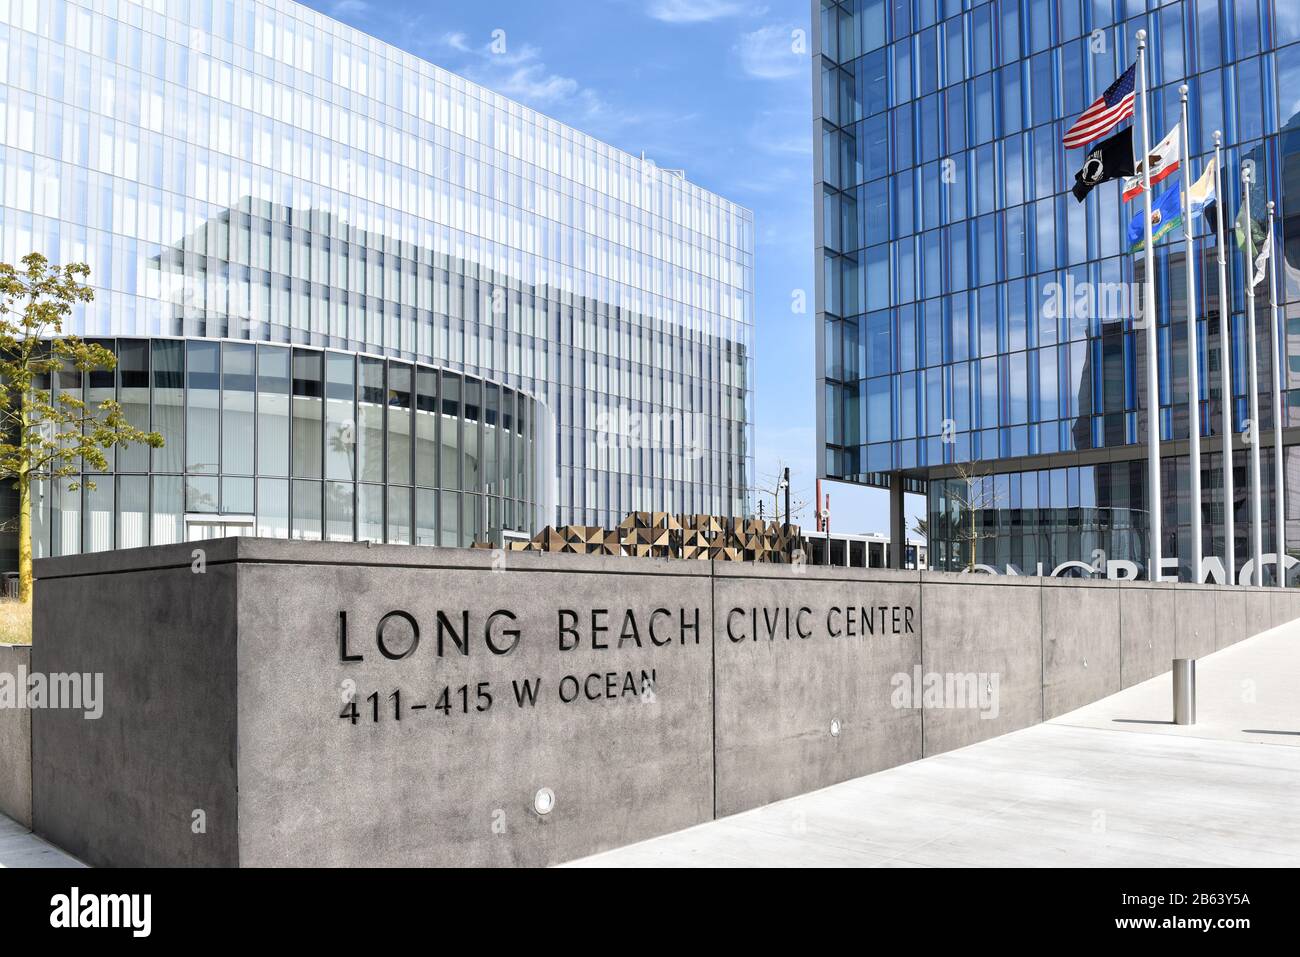 Long BEACH, KALIFORNIEN - 06. März 2020: Long Beach Civic Center, umfasst Rathaus und Port of Long Beach. Stockfoto